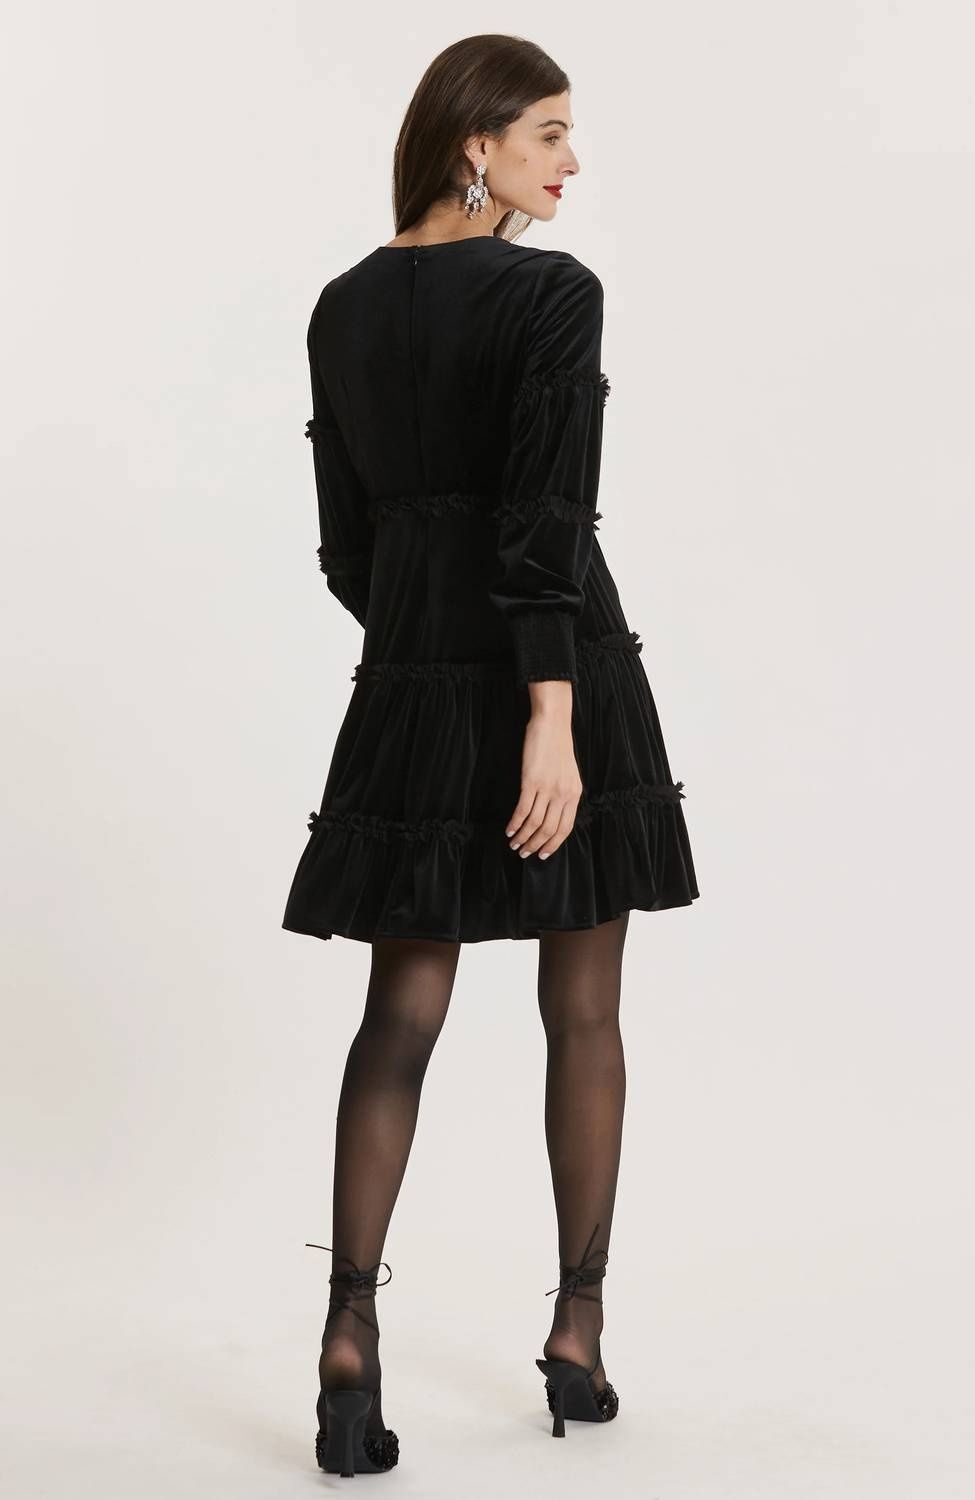 Style 1-797201448-1498 Tyler Boe Size 4 Long Sleeve Velvet Black Cocktail Dress on Queenly